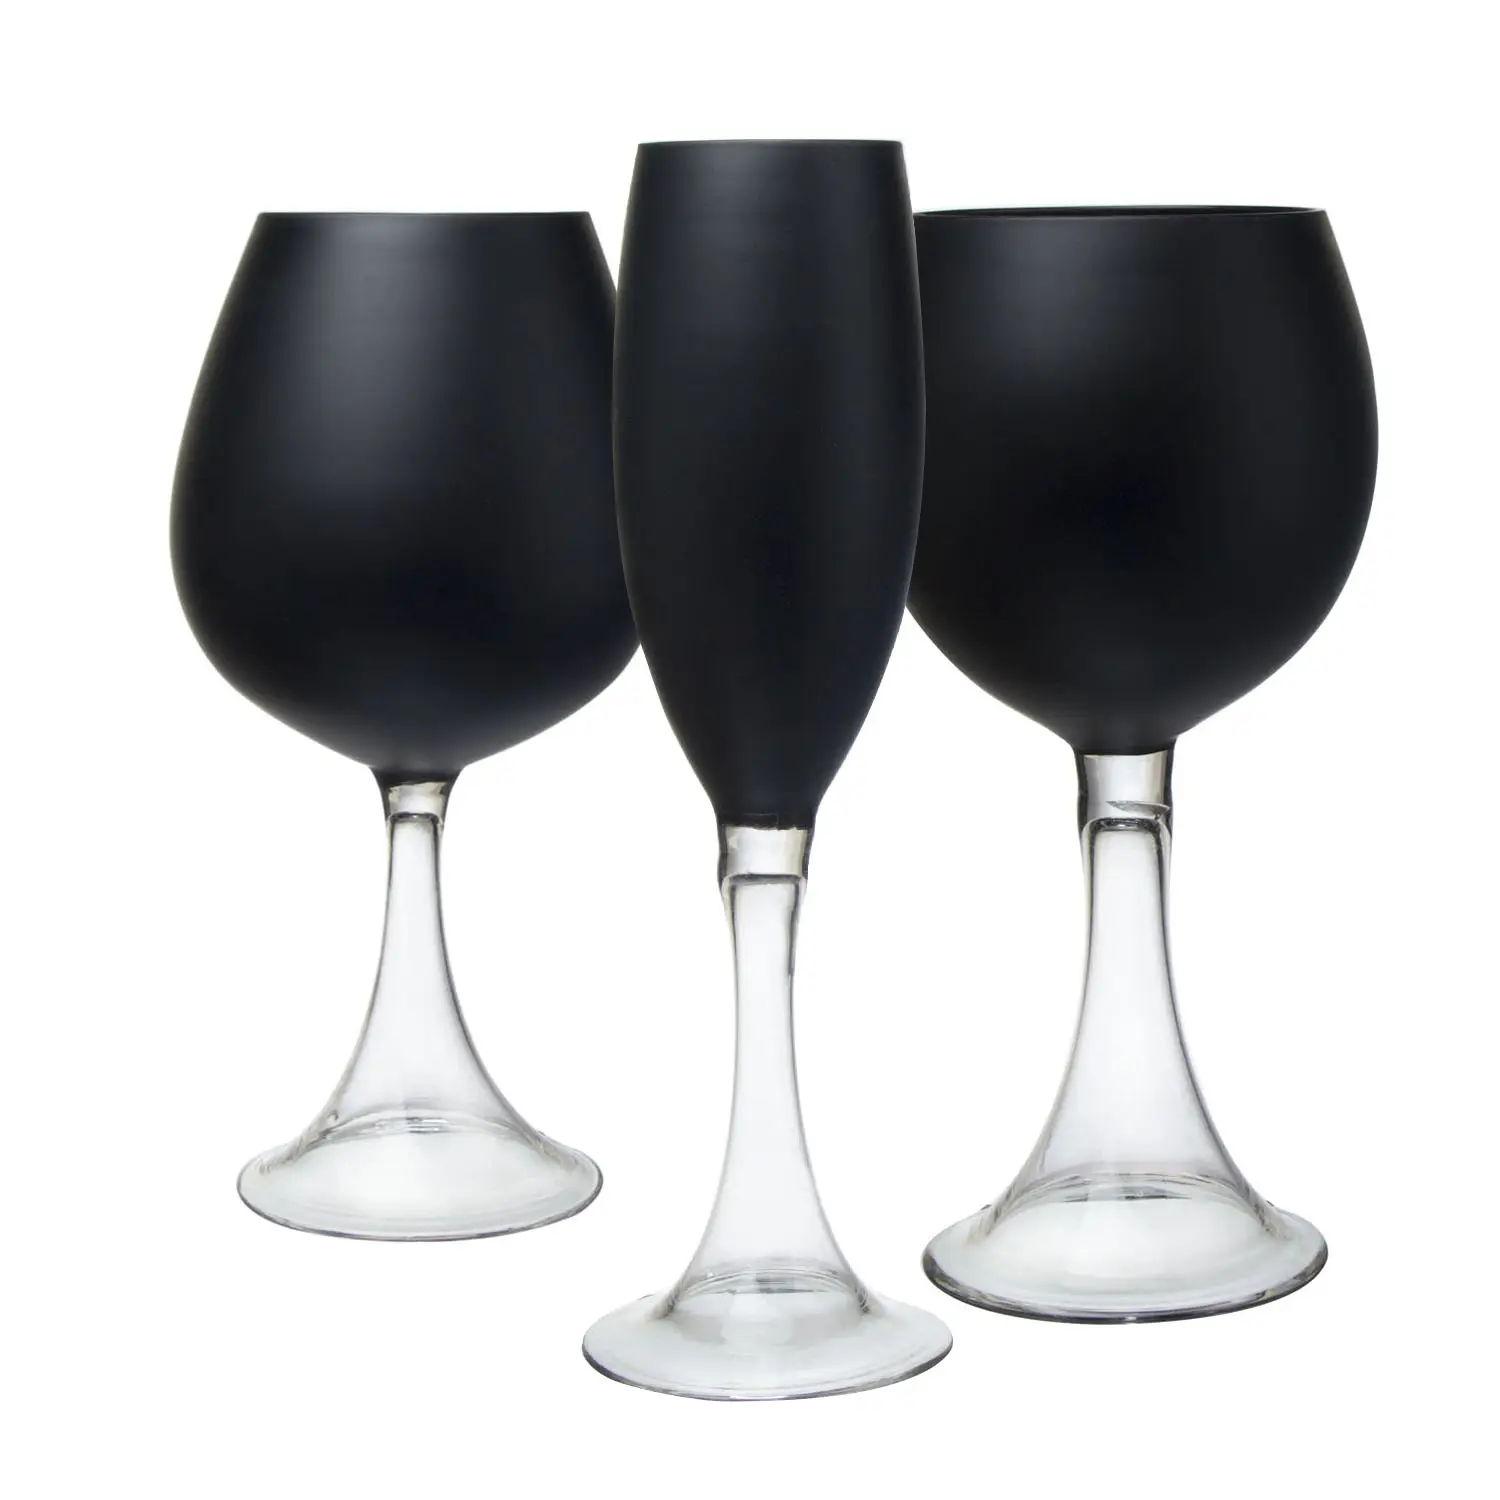 Kristal su bardağı Bar içme şampanya flüt kadehler stok şarap bardağı seti siyah cam kadehler